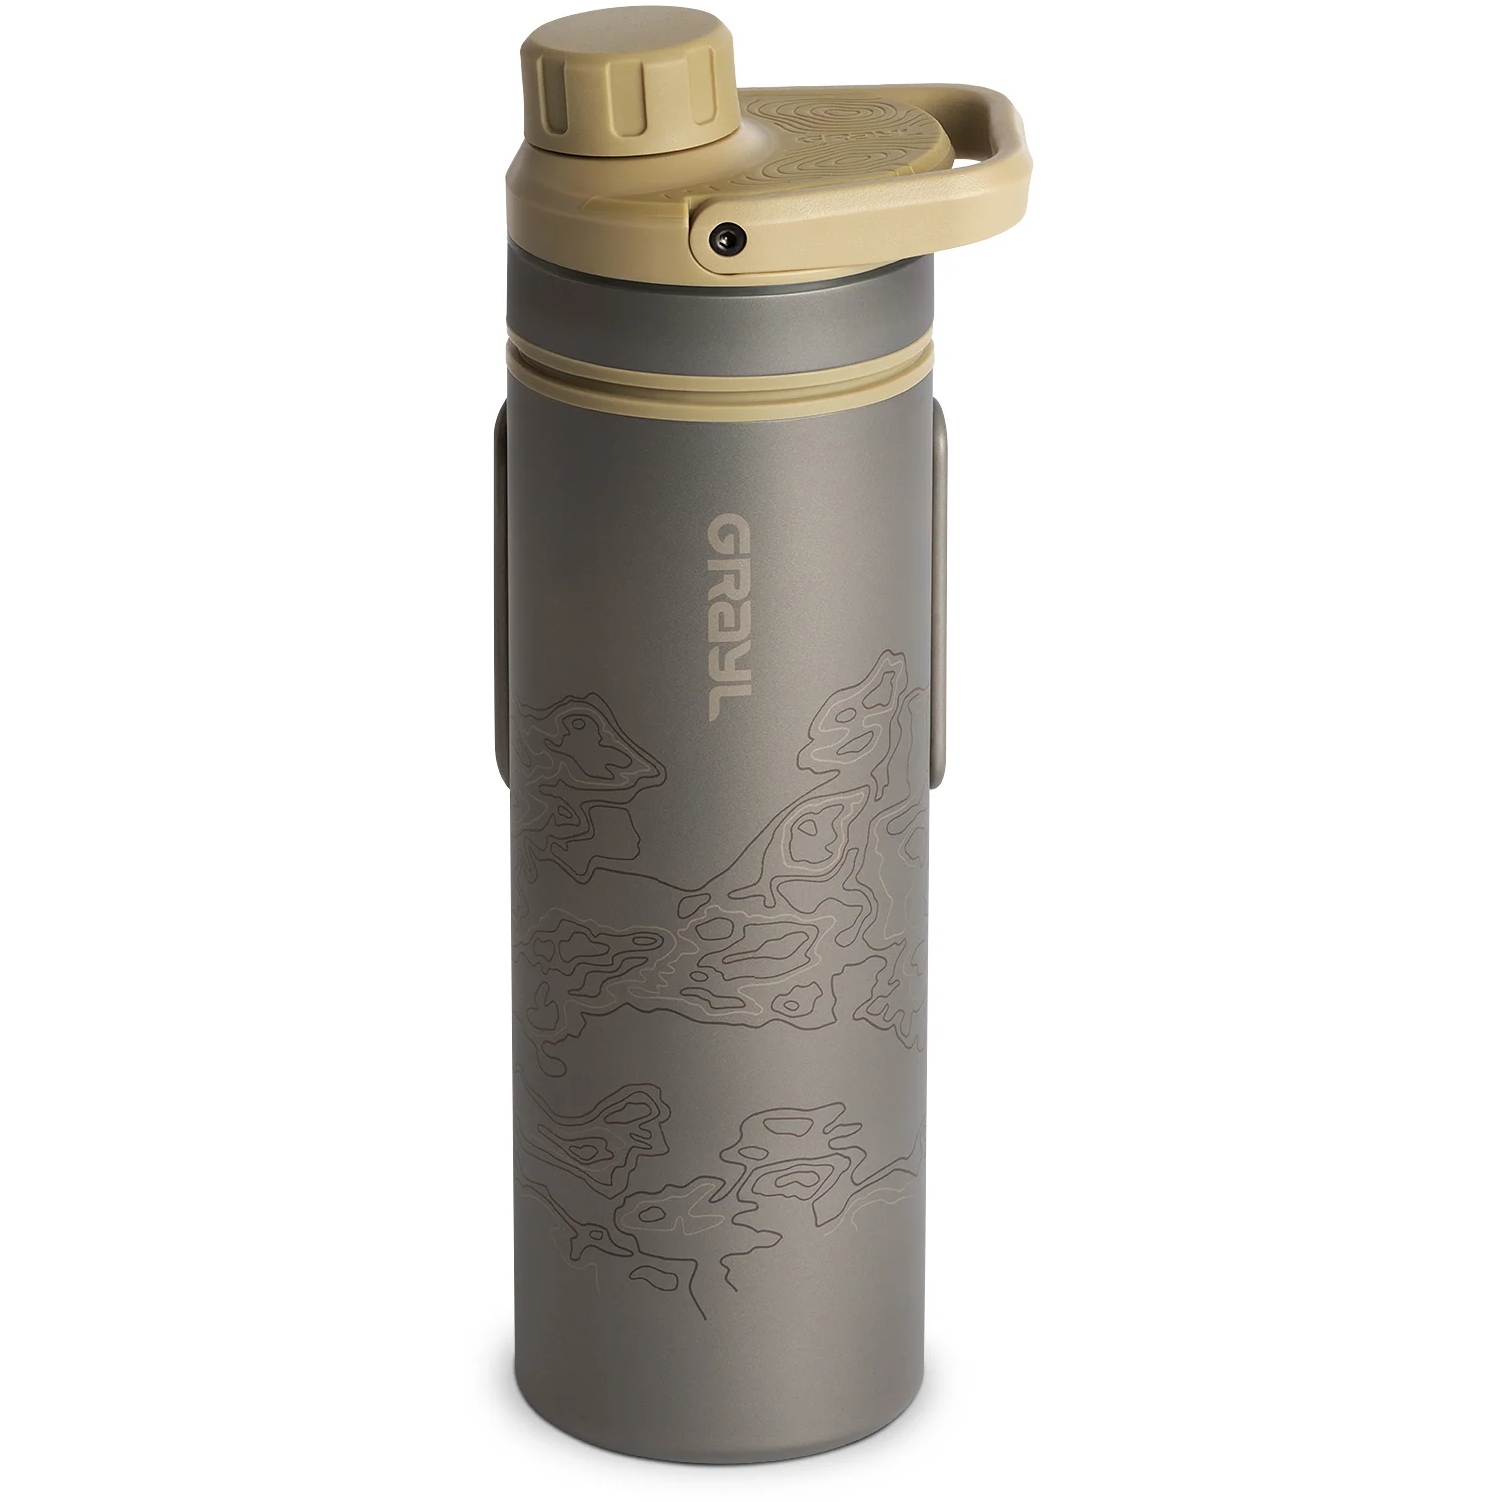 Produktbild von Grayl UltraPress Purifier Titanflasche mit Wasserfilter - 500ml - Desert Tan